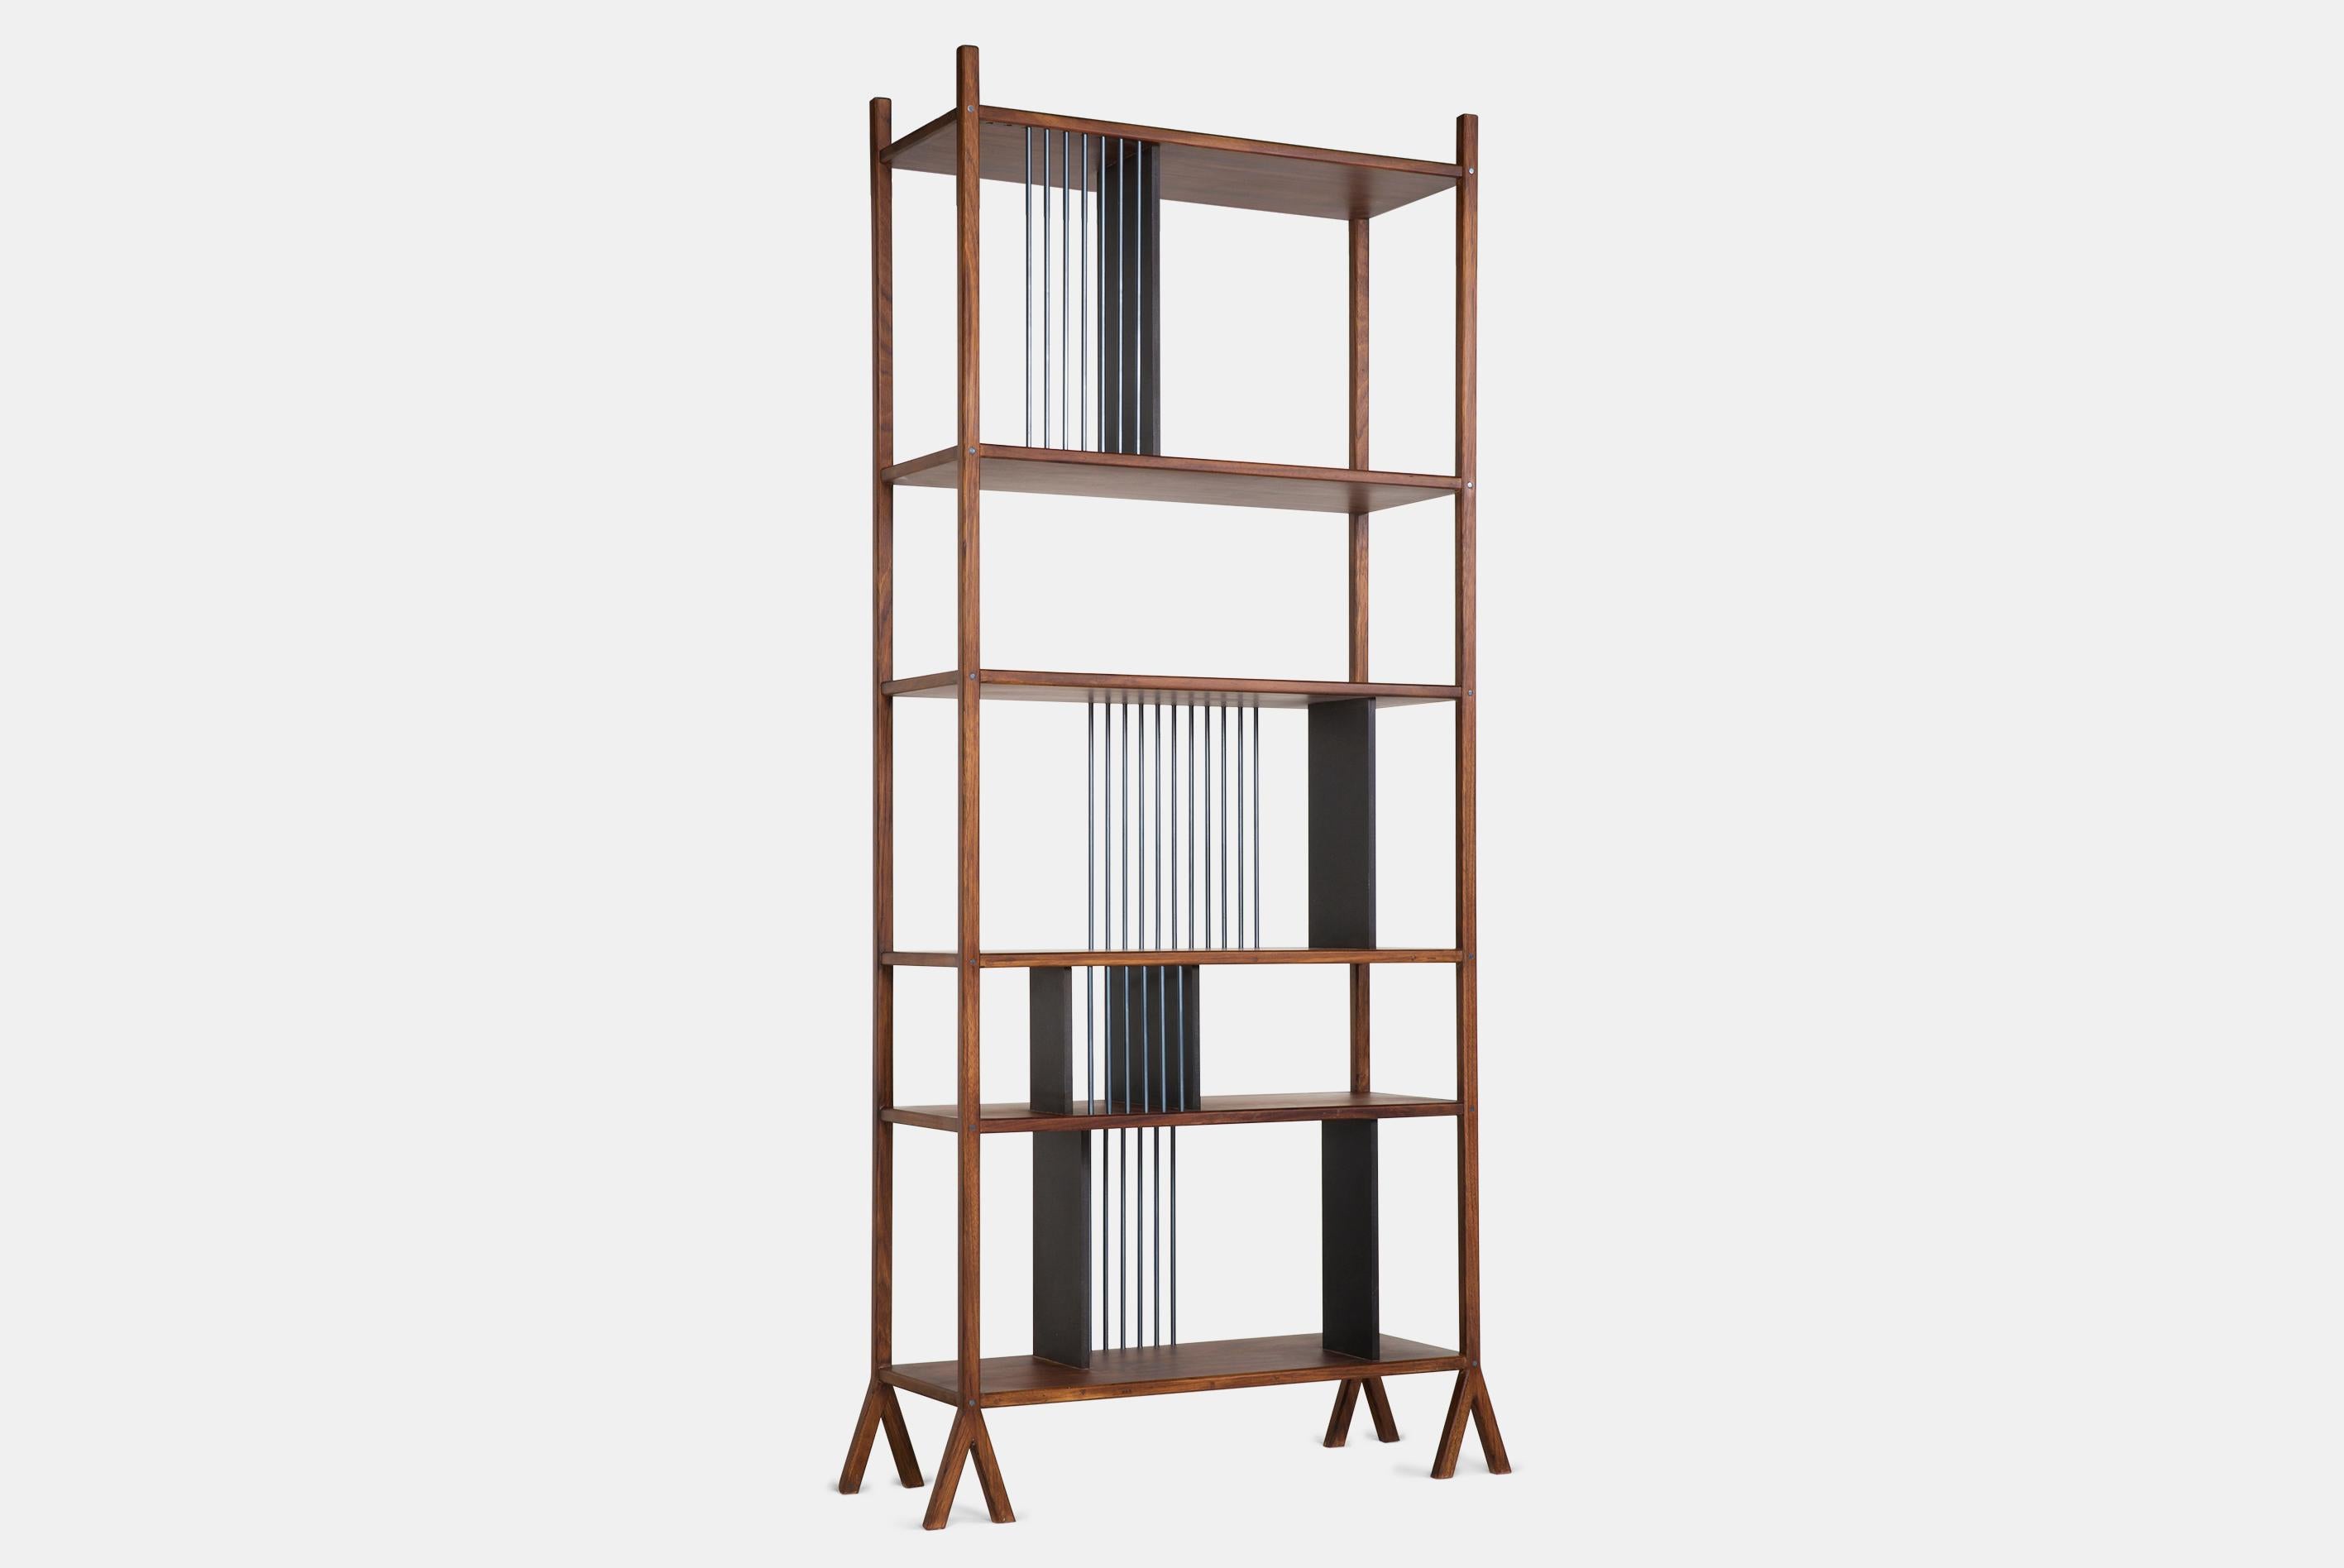 Dieses zweiseitige Bücherregal besticht durch sein schlankes Design. Dieses Bücherregal wurde als ein Verbund von modularen Teilen konzipiert, die je nach den Bedürfnissen des Kunden in verschiedenen Varianten zusammengestellt werden können. Das